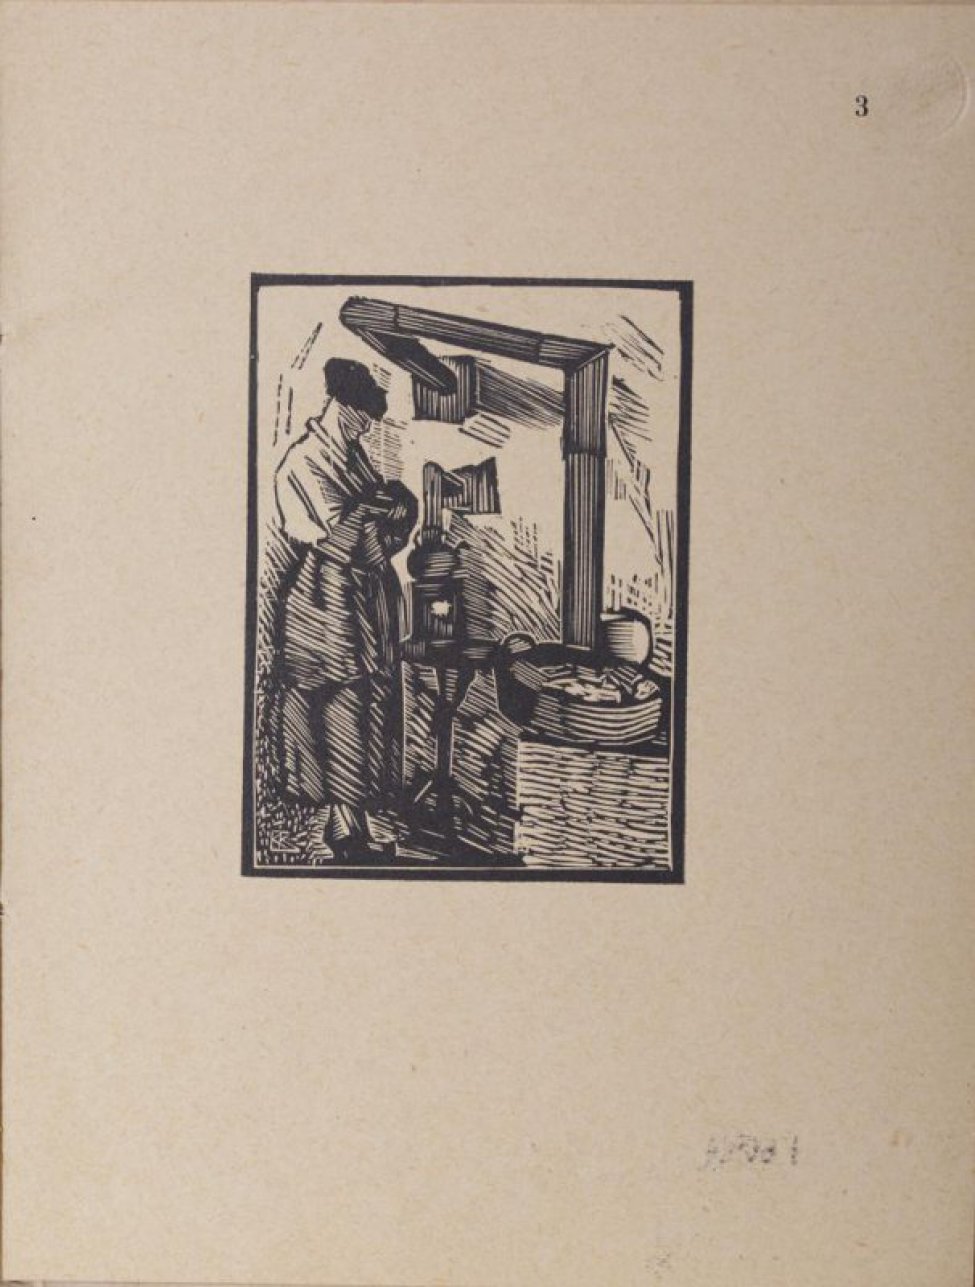 Изображена женщина в профиль вправо, стоящая со скрещенными на груди руками перед маленькой железной печкой, на которой стоит чайник. Справа корзина со щепками.